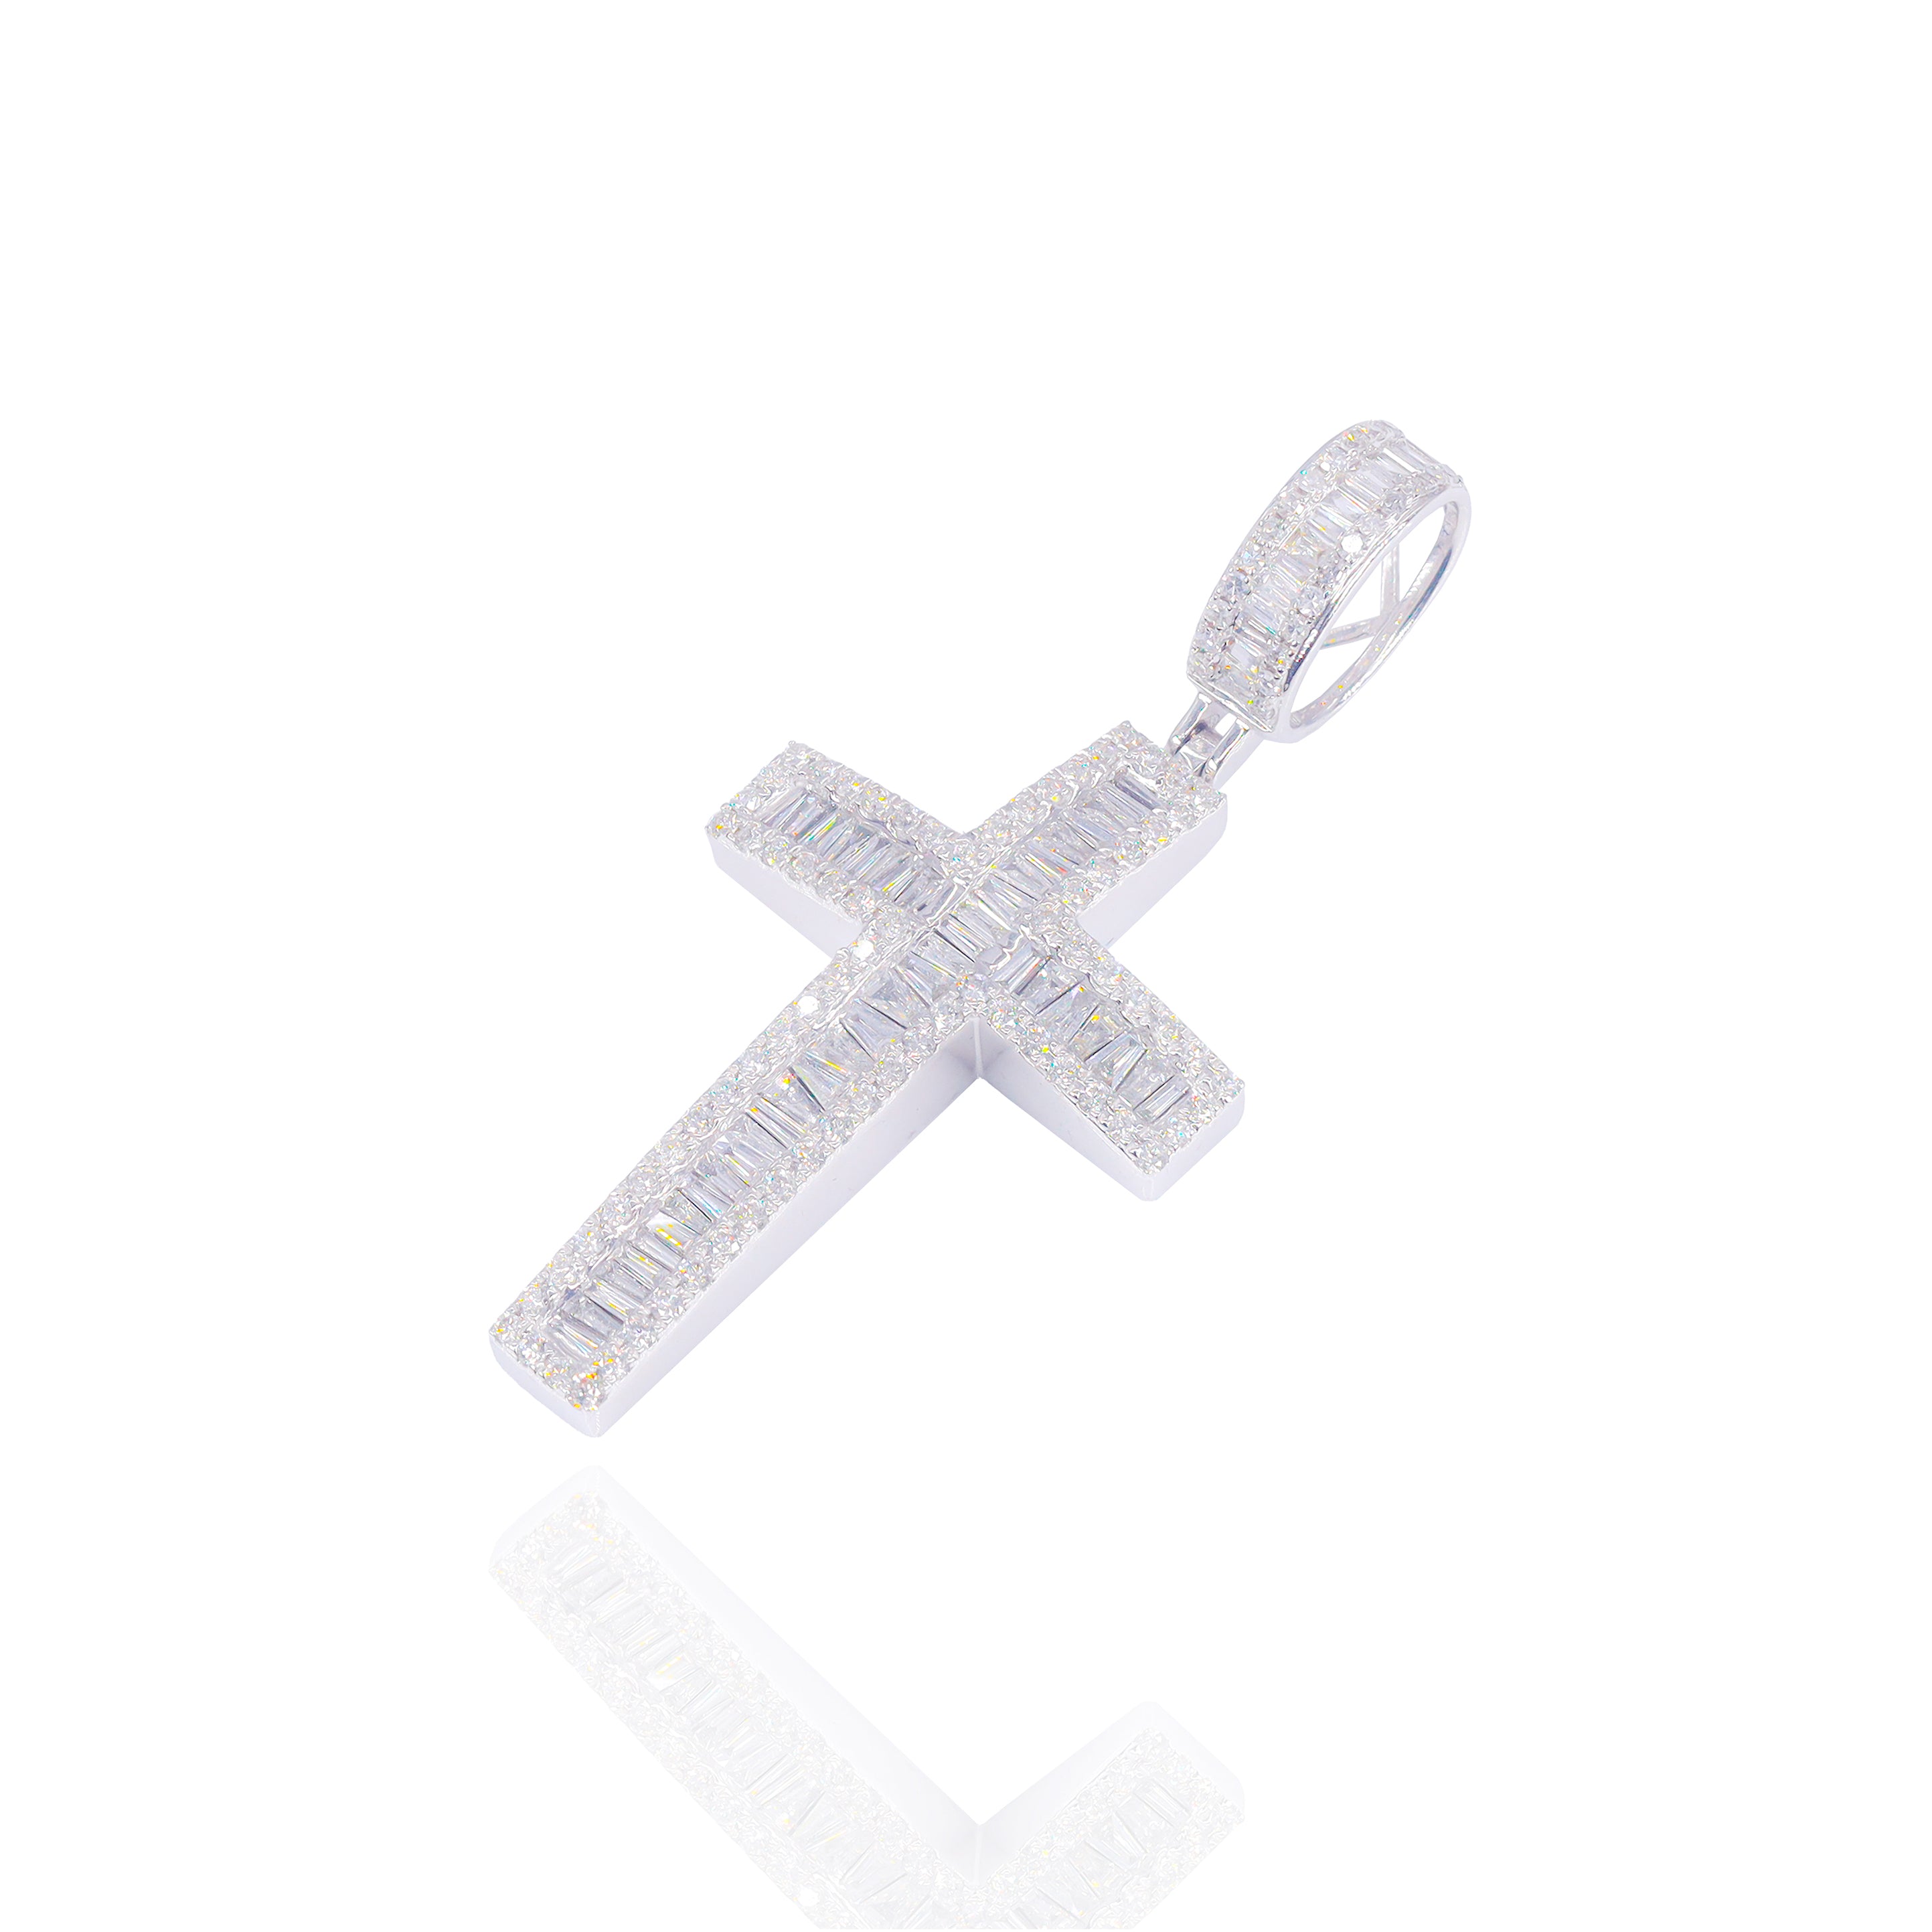 Curved Baguette Diamond Cross Pendant